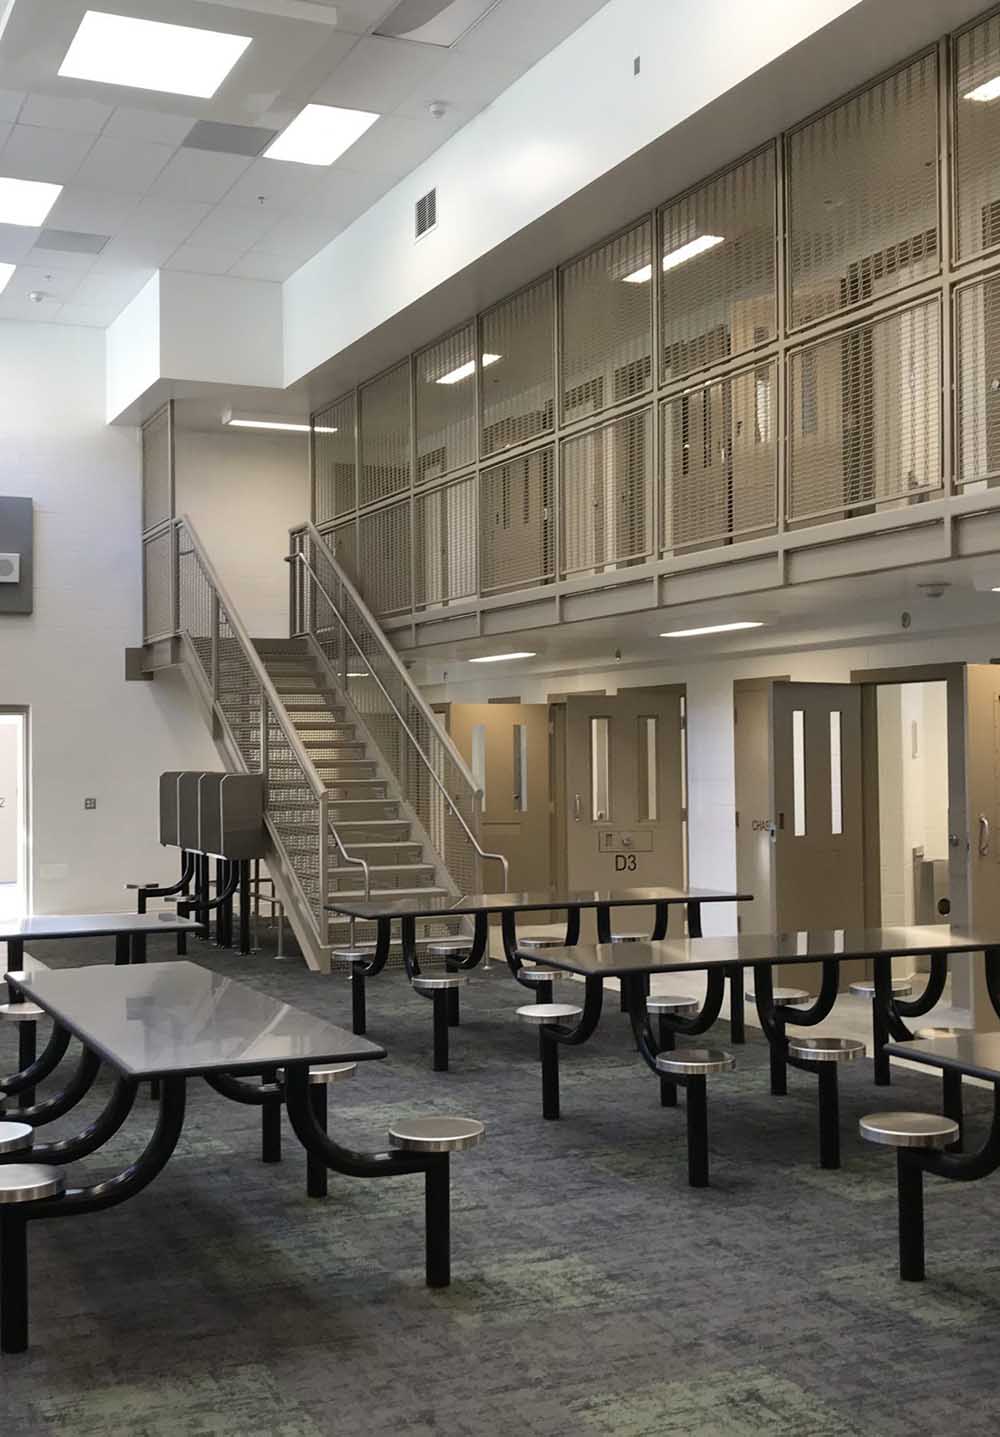 tuolumne county jail